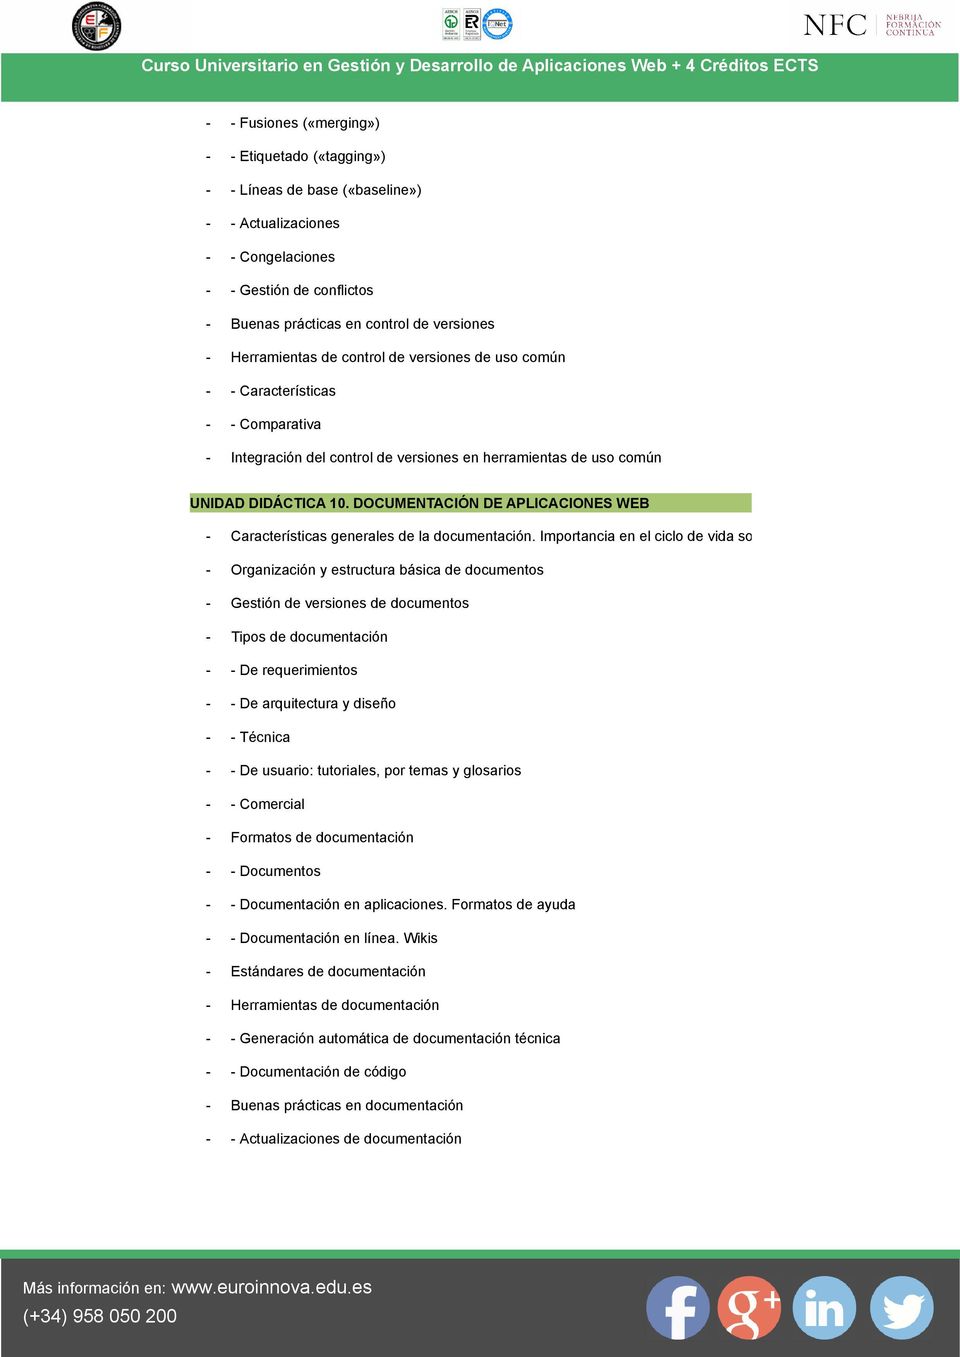 DOCUMENTACIÓN DE APLICACIONES WEB - Características generales de la documentación.